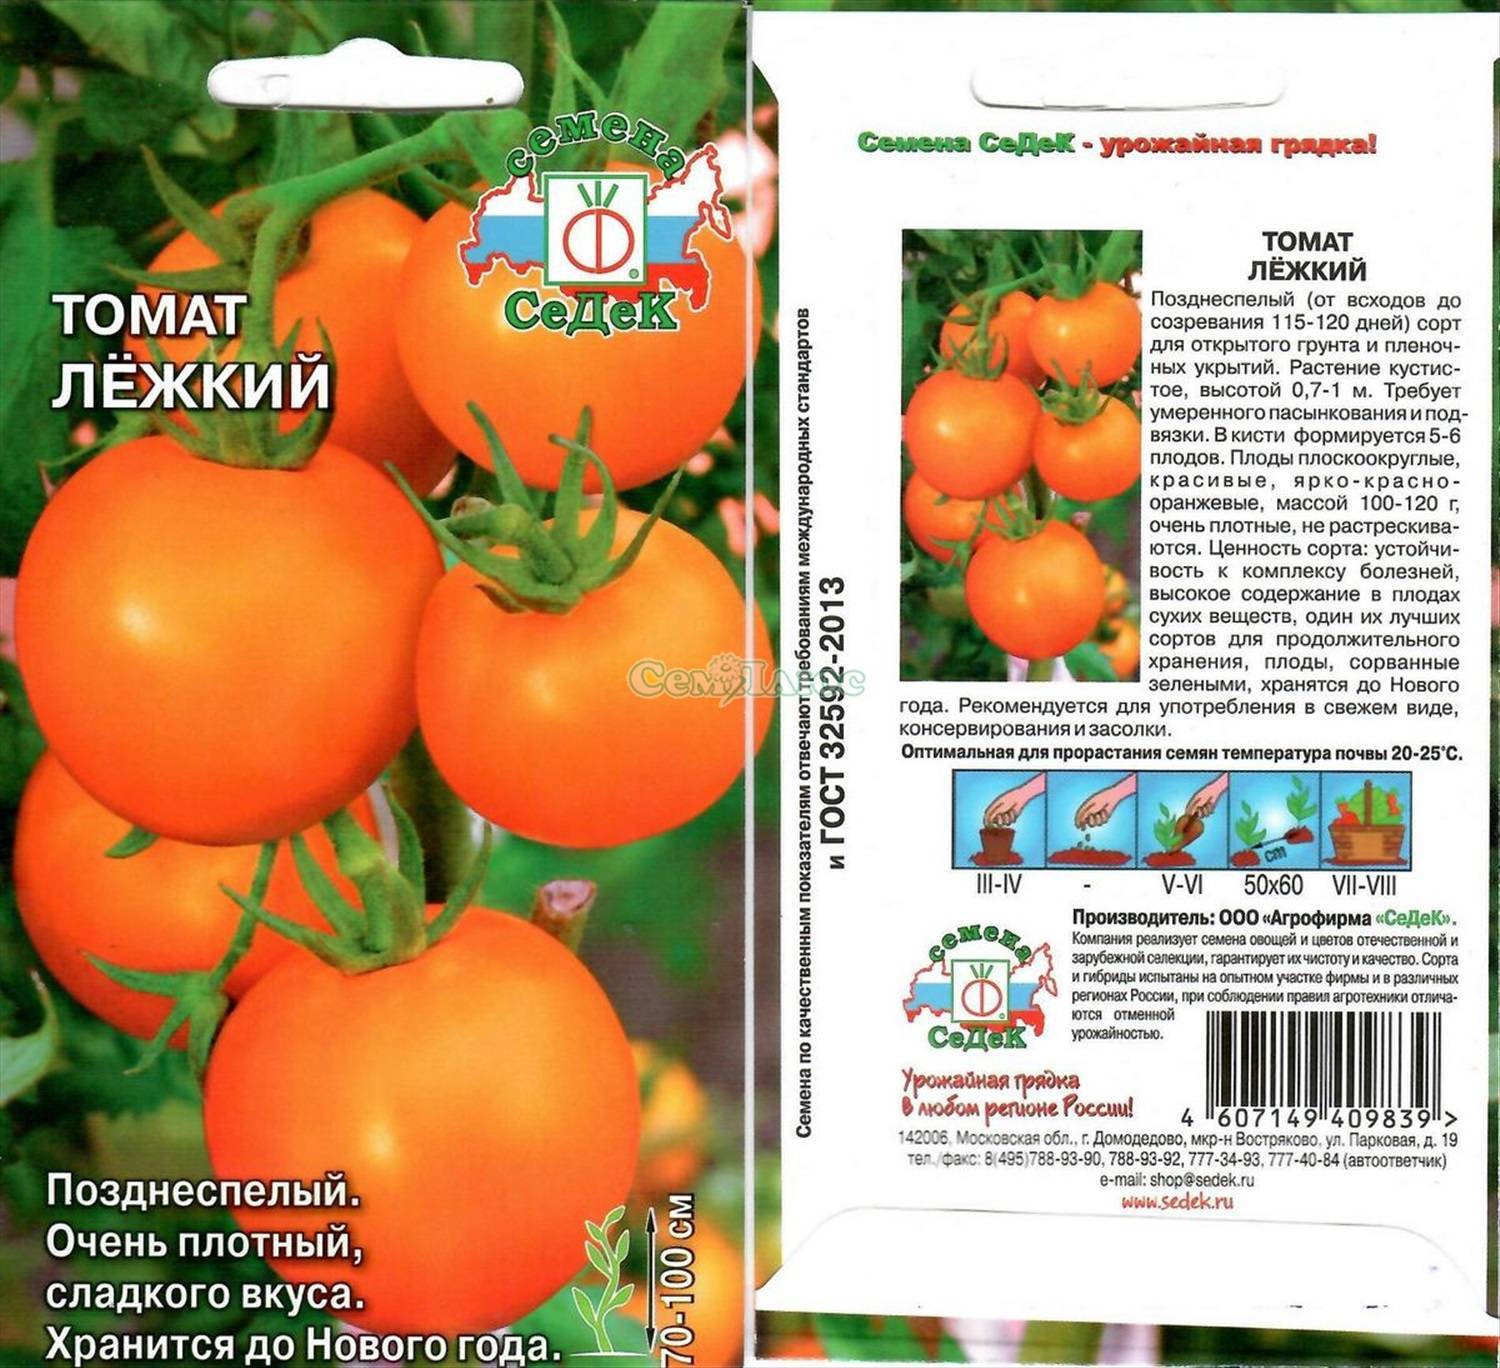 38 сортов томатов черри – описание с фото | огородникам инфо